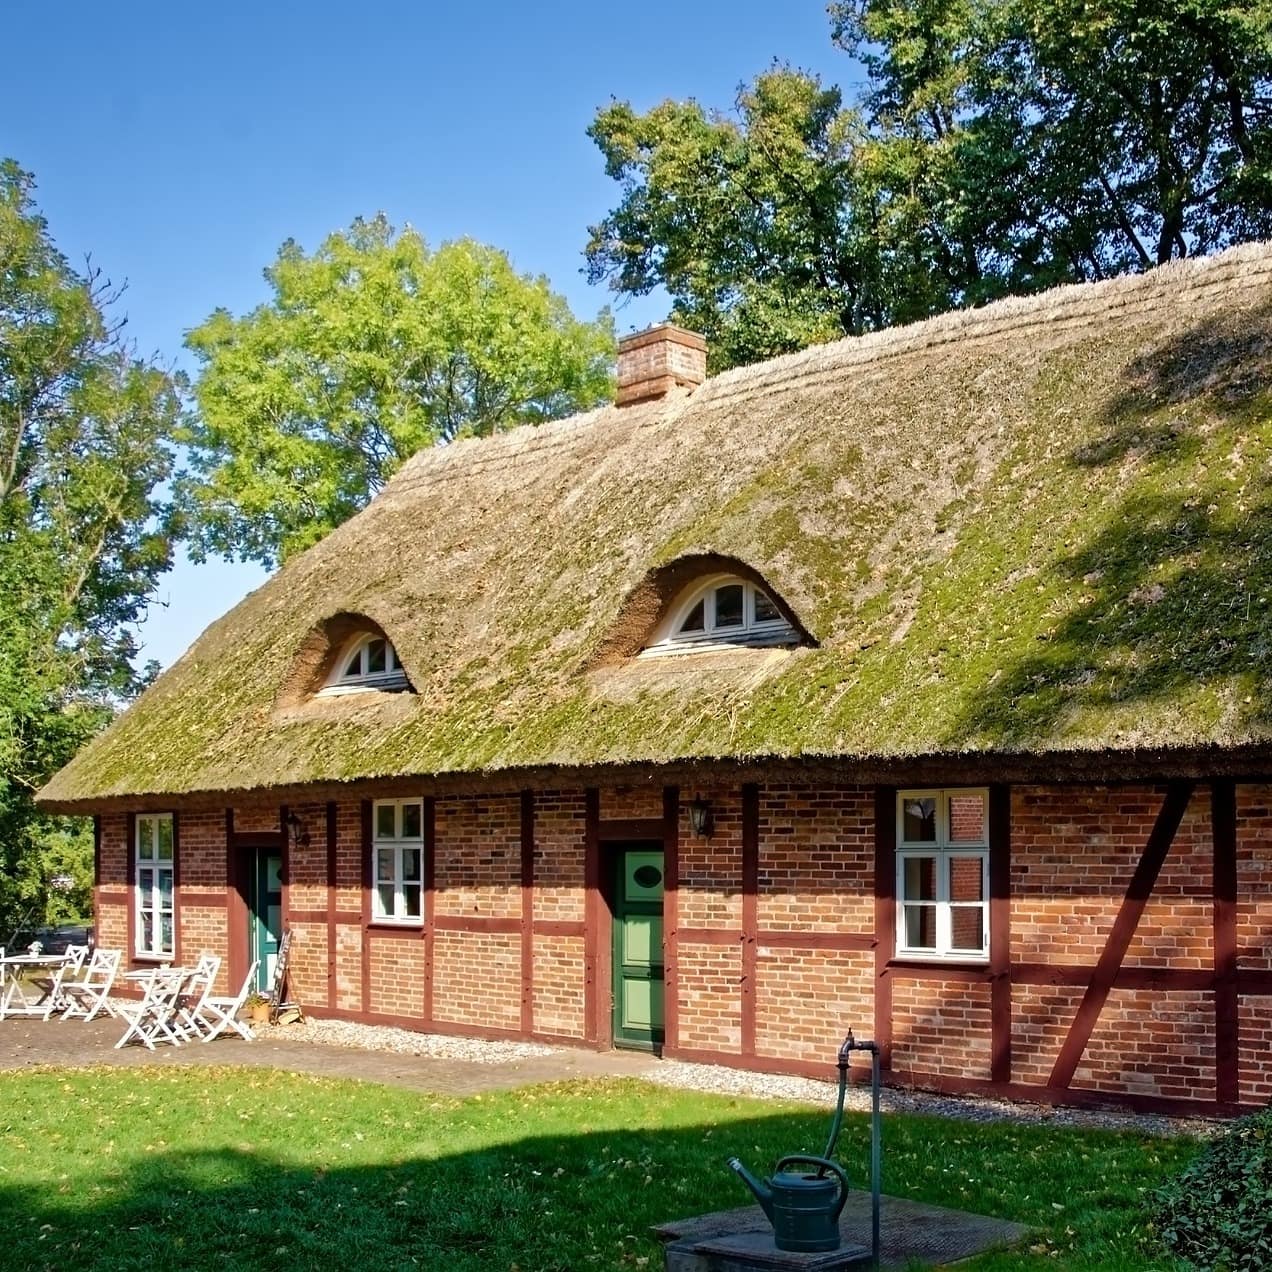 Blick auf ein typisches Haus mit Reetdach auf Rügen mit Garten, das Meer ist im Hintergrund zu erkennen